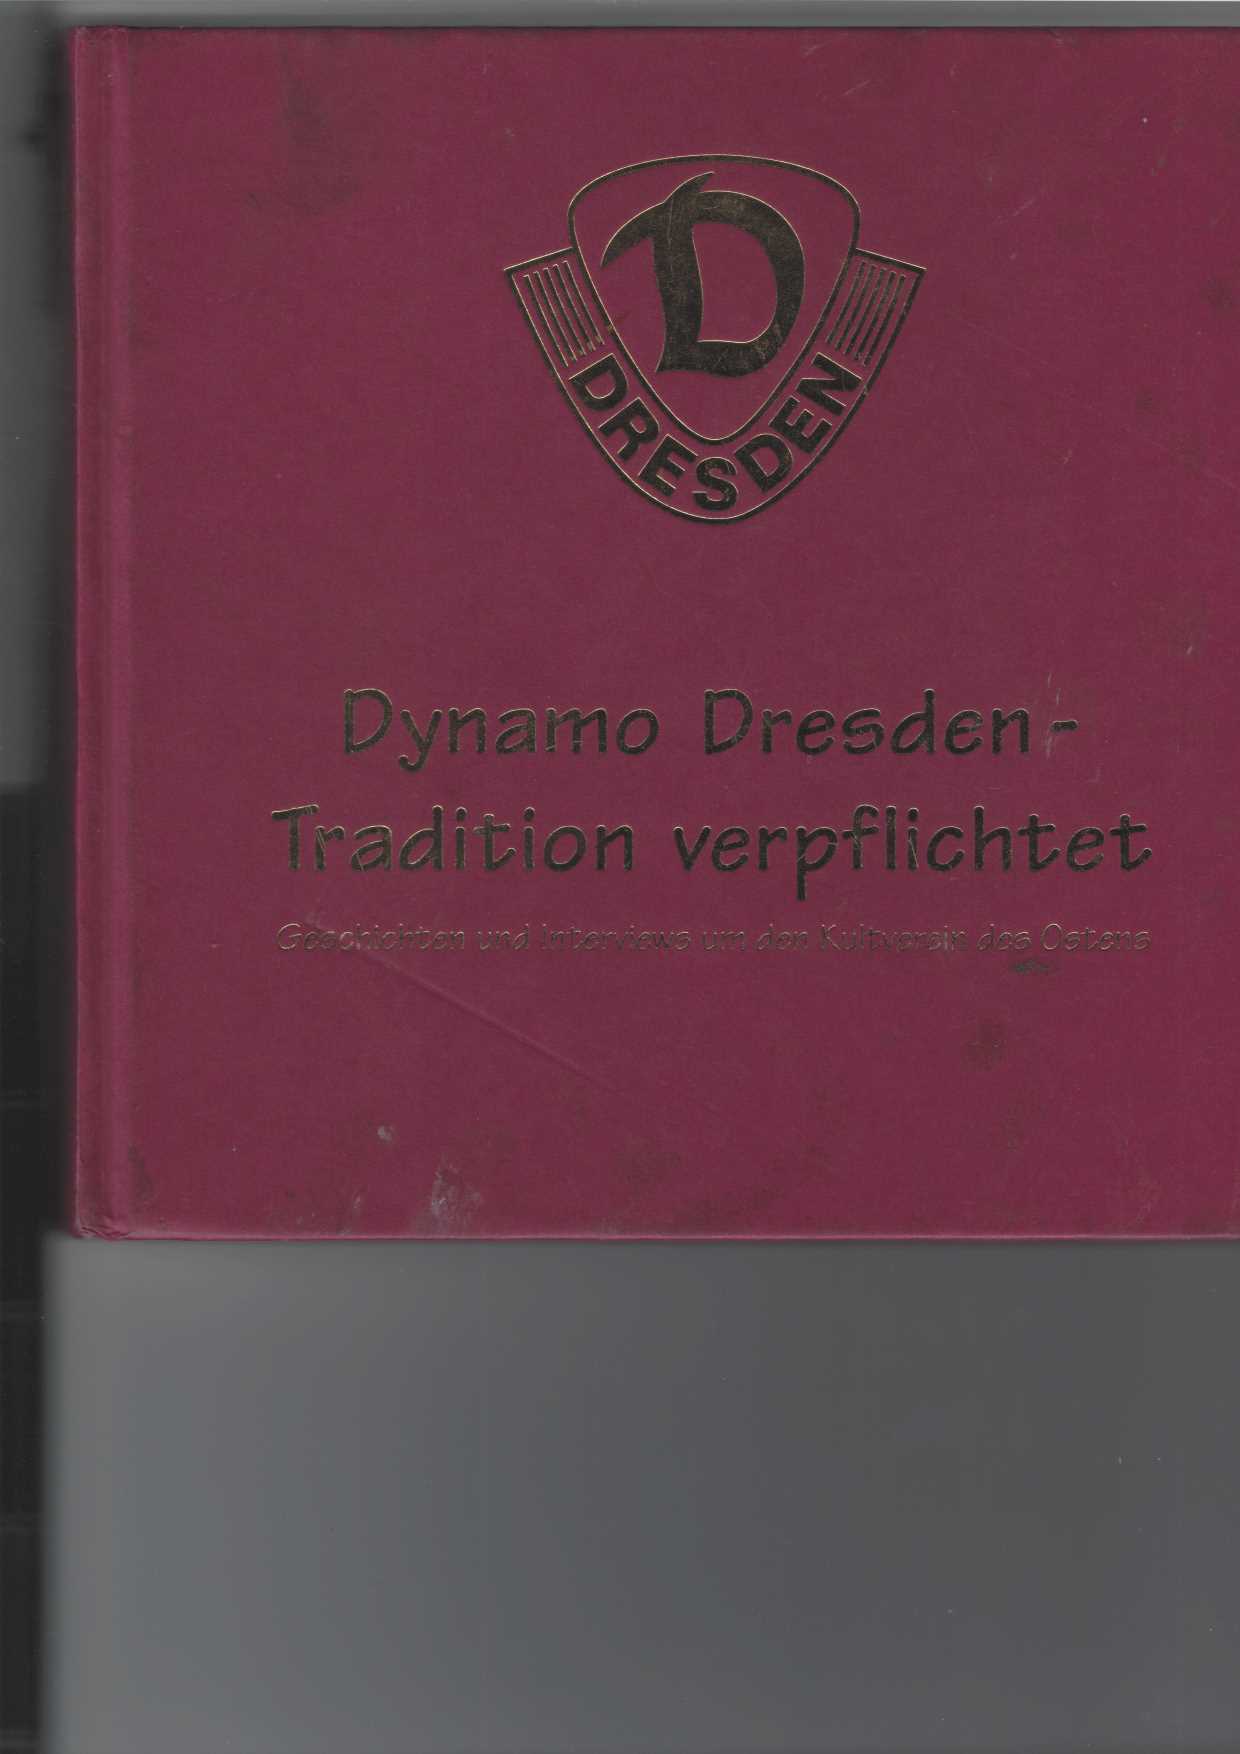 Genschmar, Jens und Jrgen Schwarz:  Dynamo Dresden - Tradition verpflichtet. 